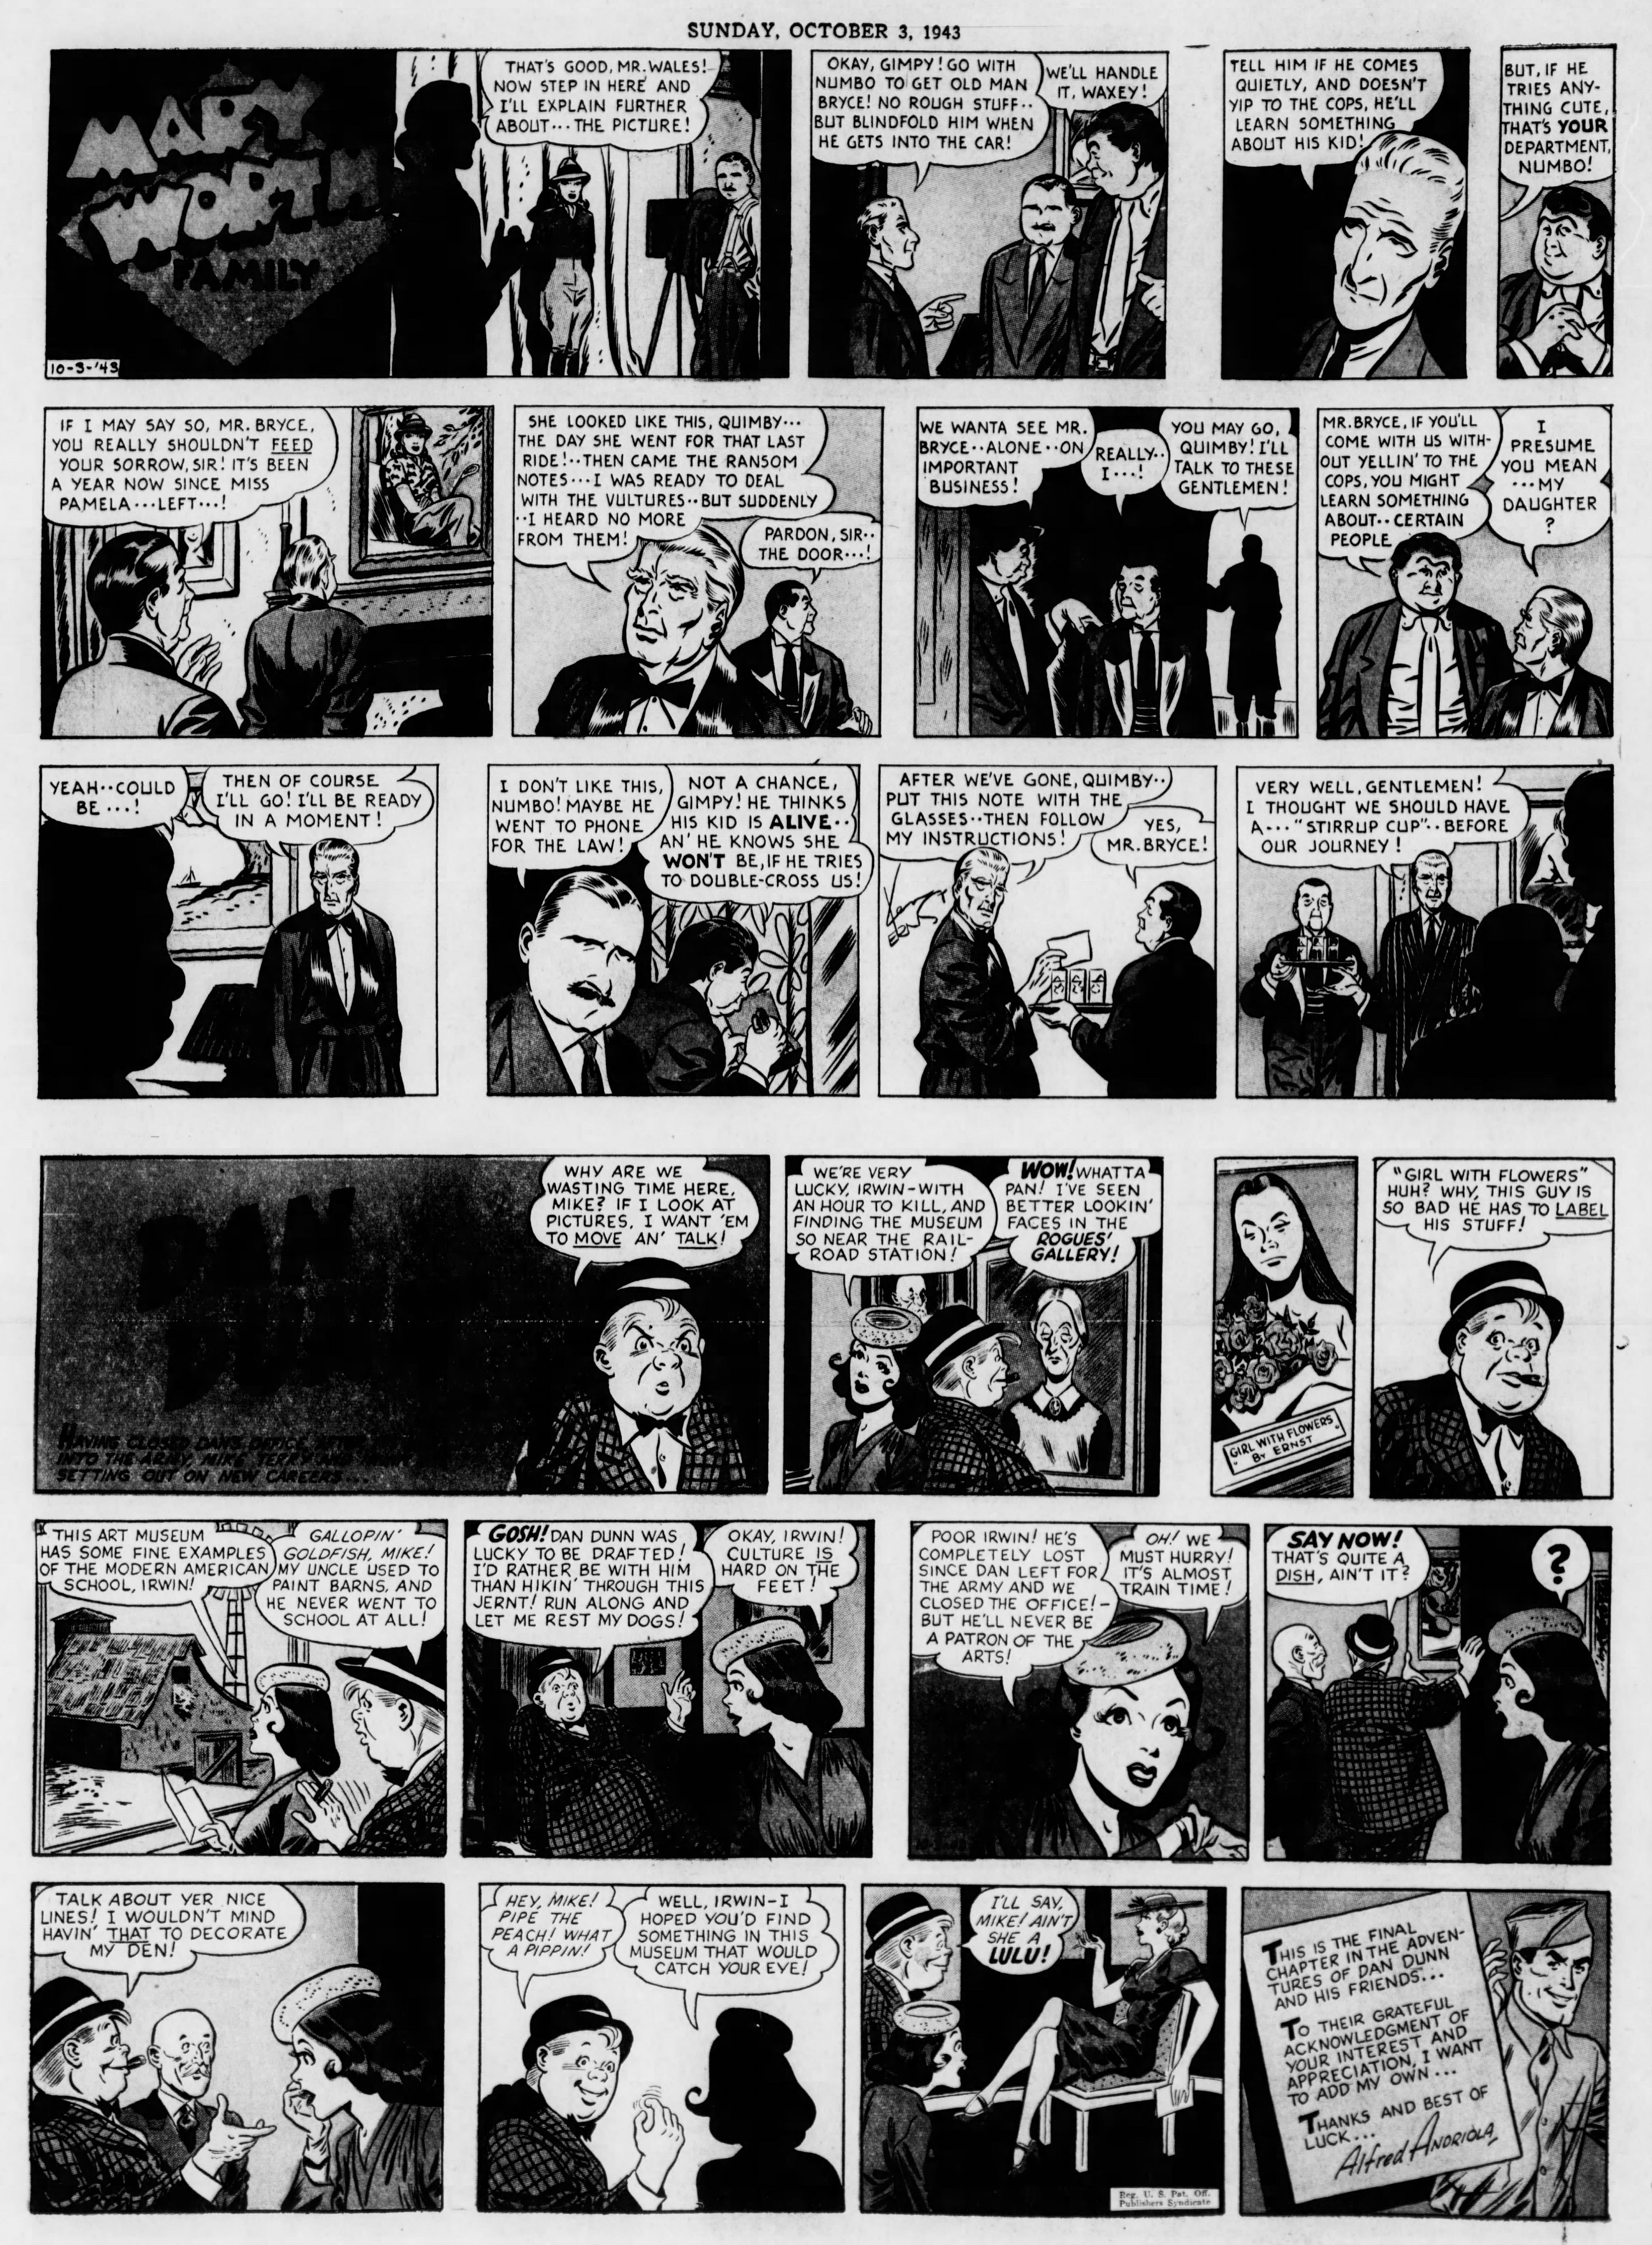 The_Brooklyn_Daily_Eagle_Sun__Oct_3__1943_(10).jpg